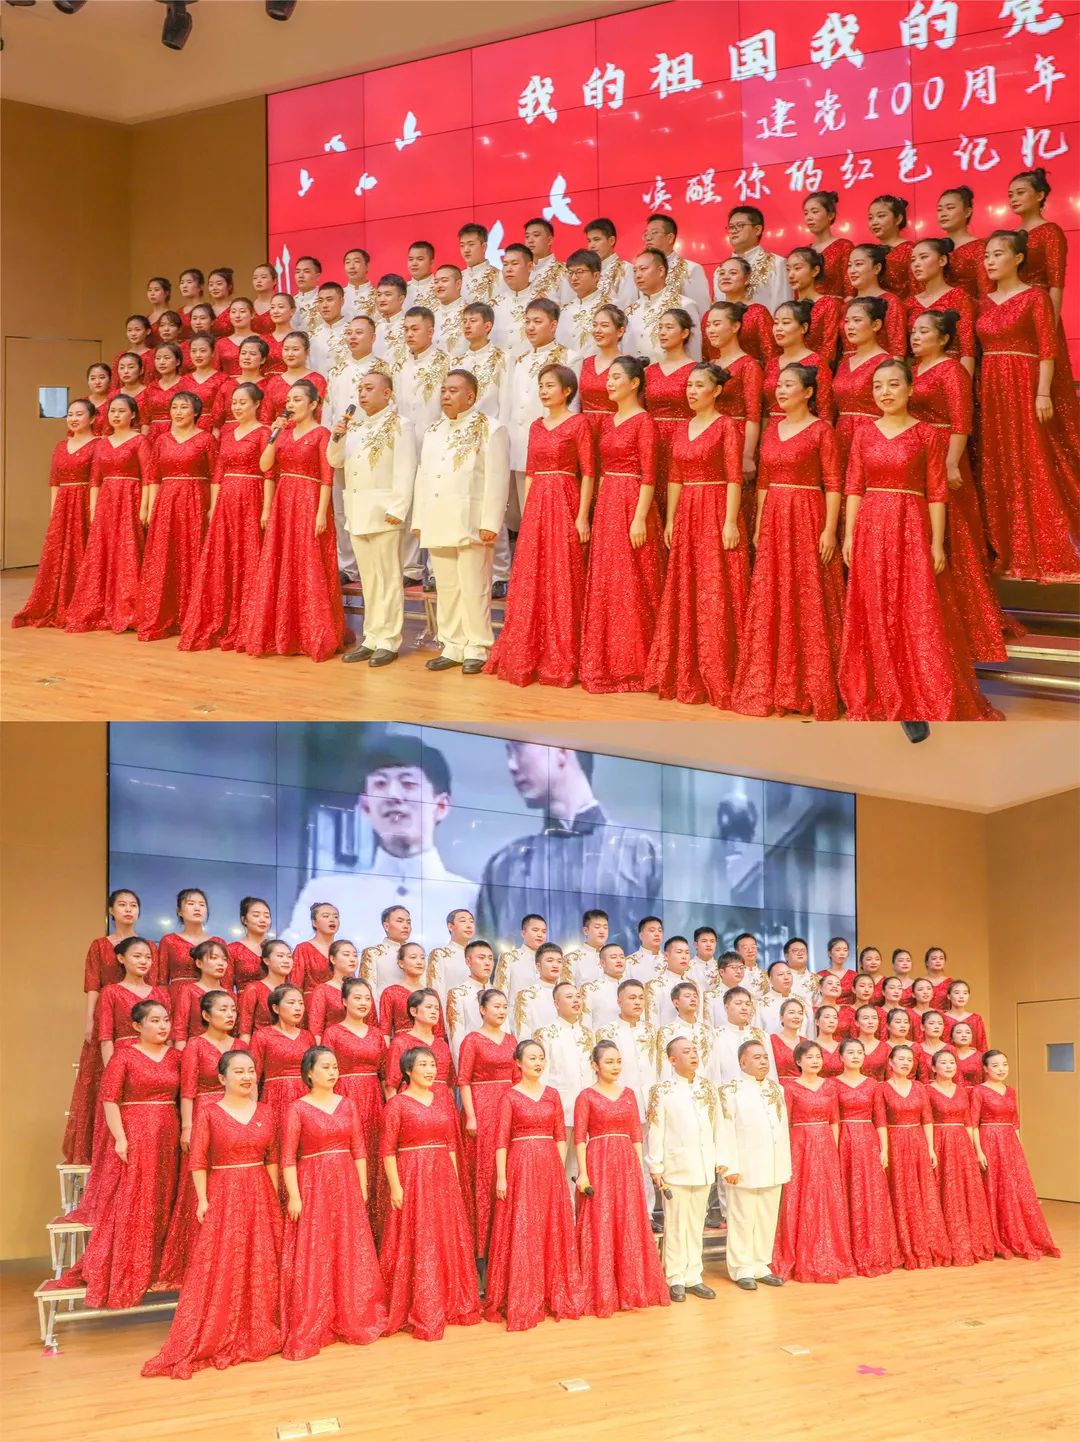 西安高新医院 「红歌颂党恩 再创新辉煌」主题红歌歌唱活动热力开唱